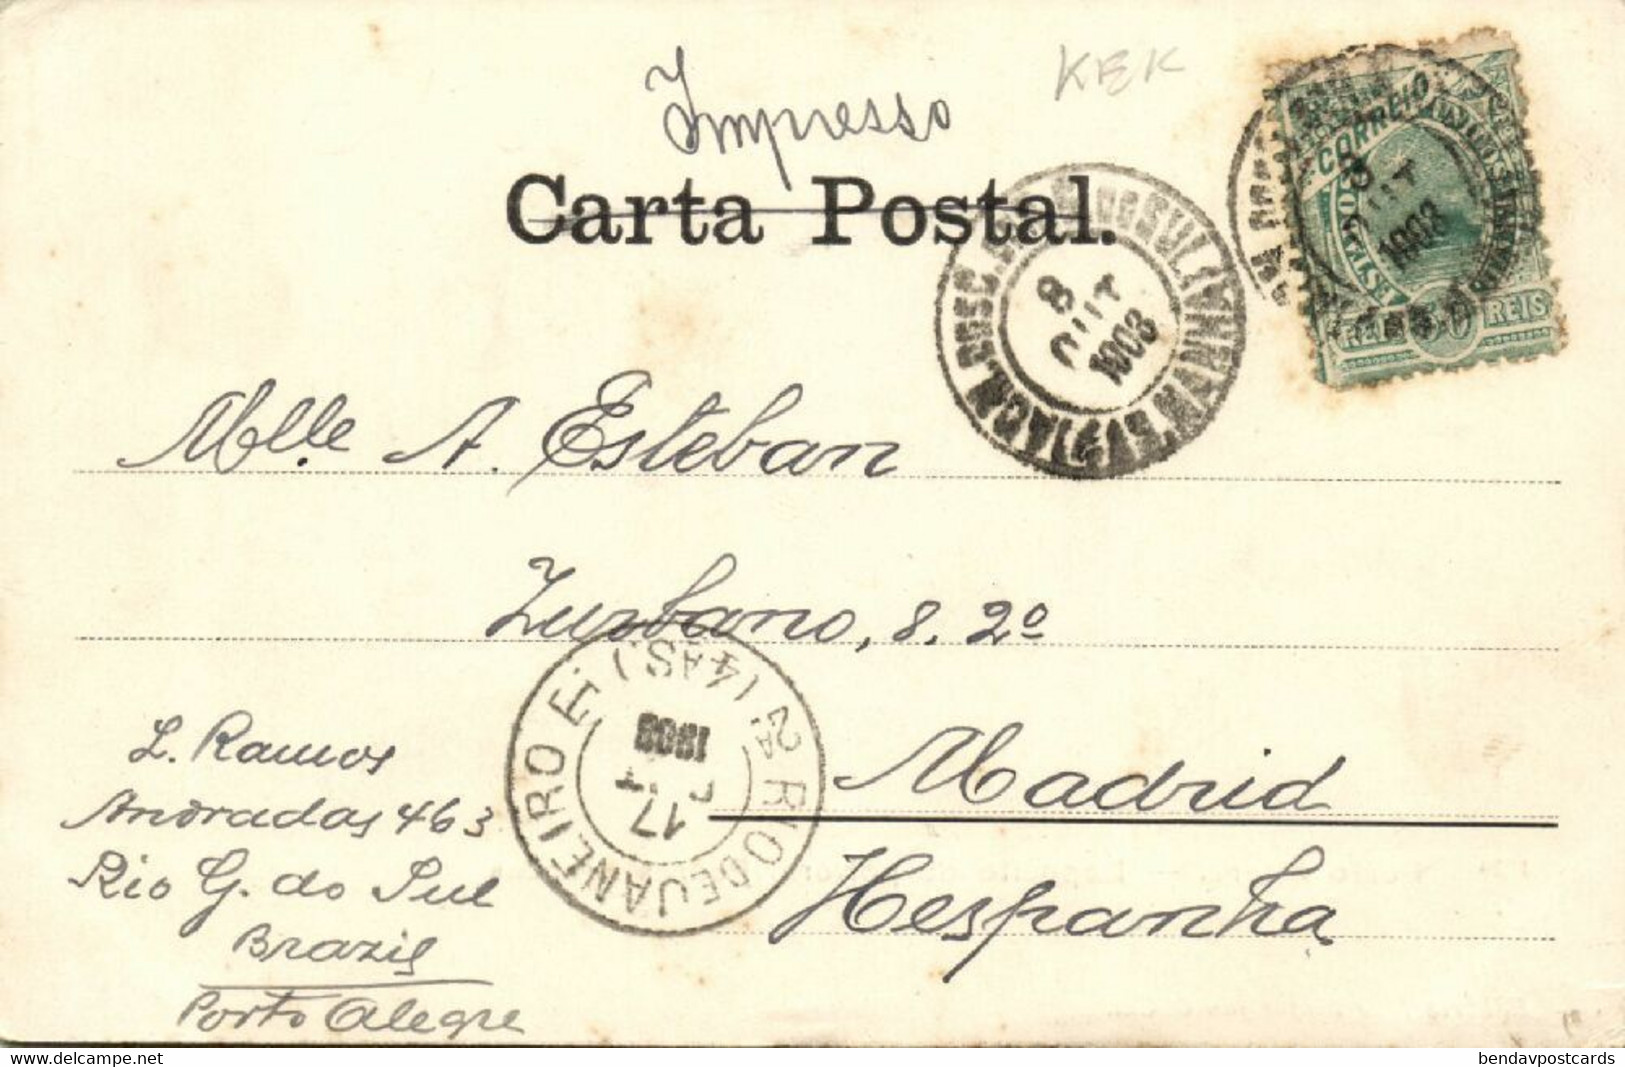 Brazil, PORTO ALEGRE, Deposito De Polvora, Pedras Brancas (1903) Postcard - Porto Alegre